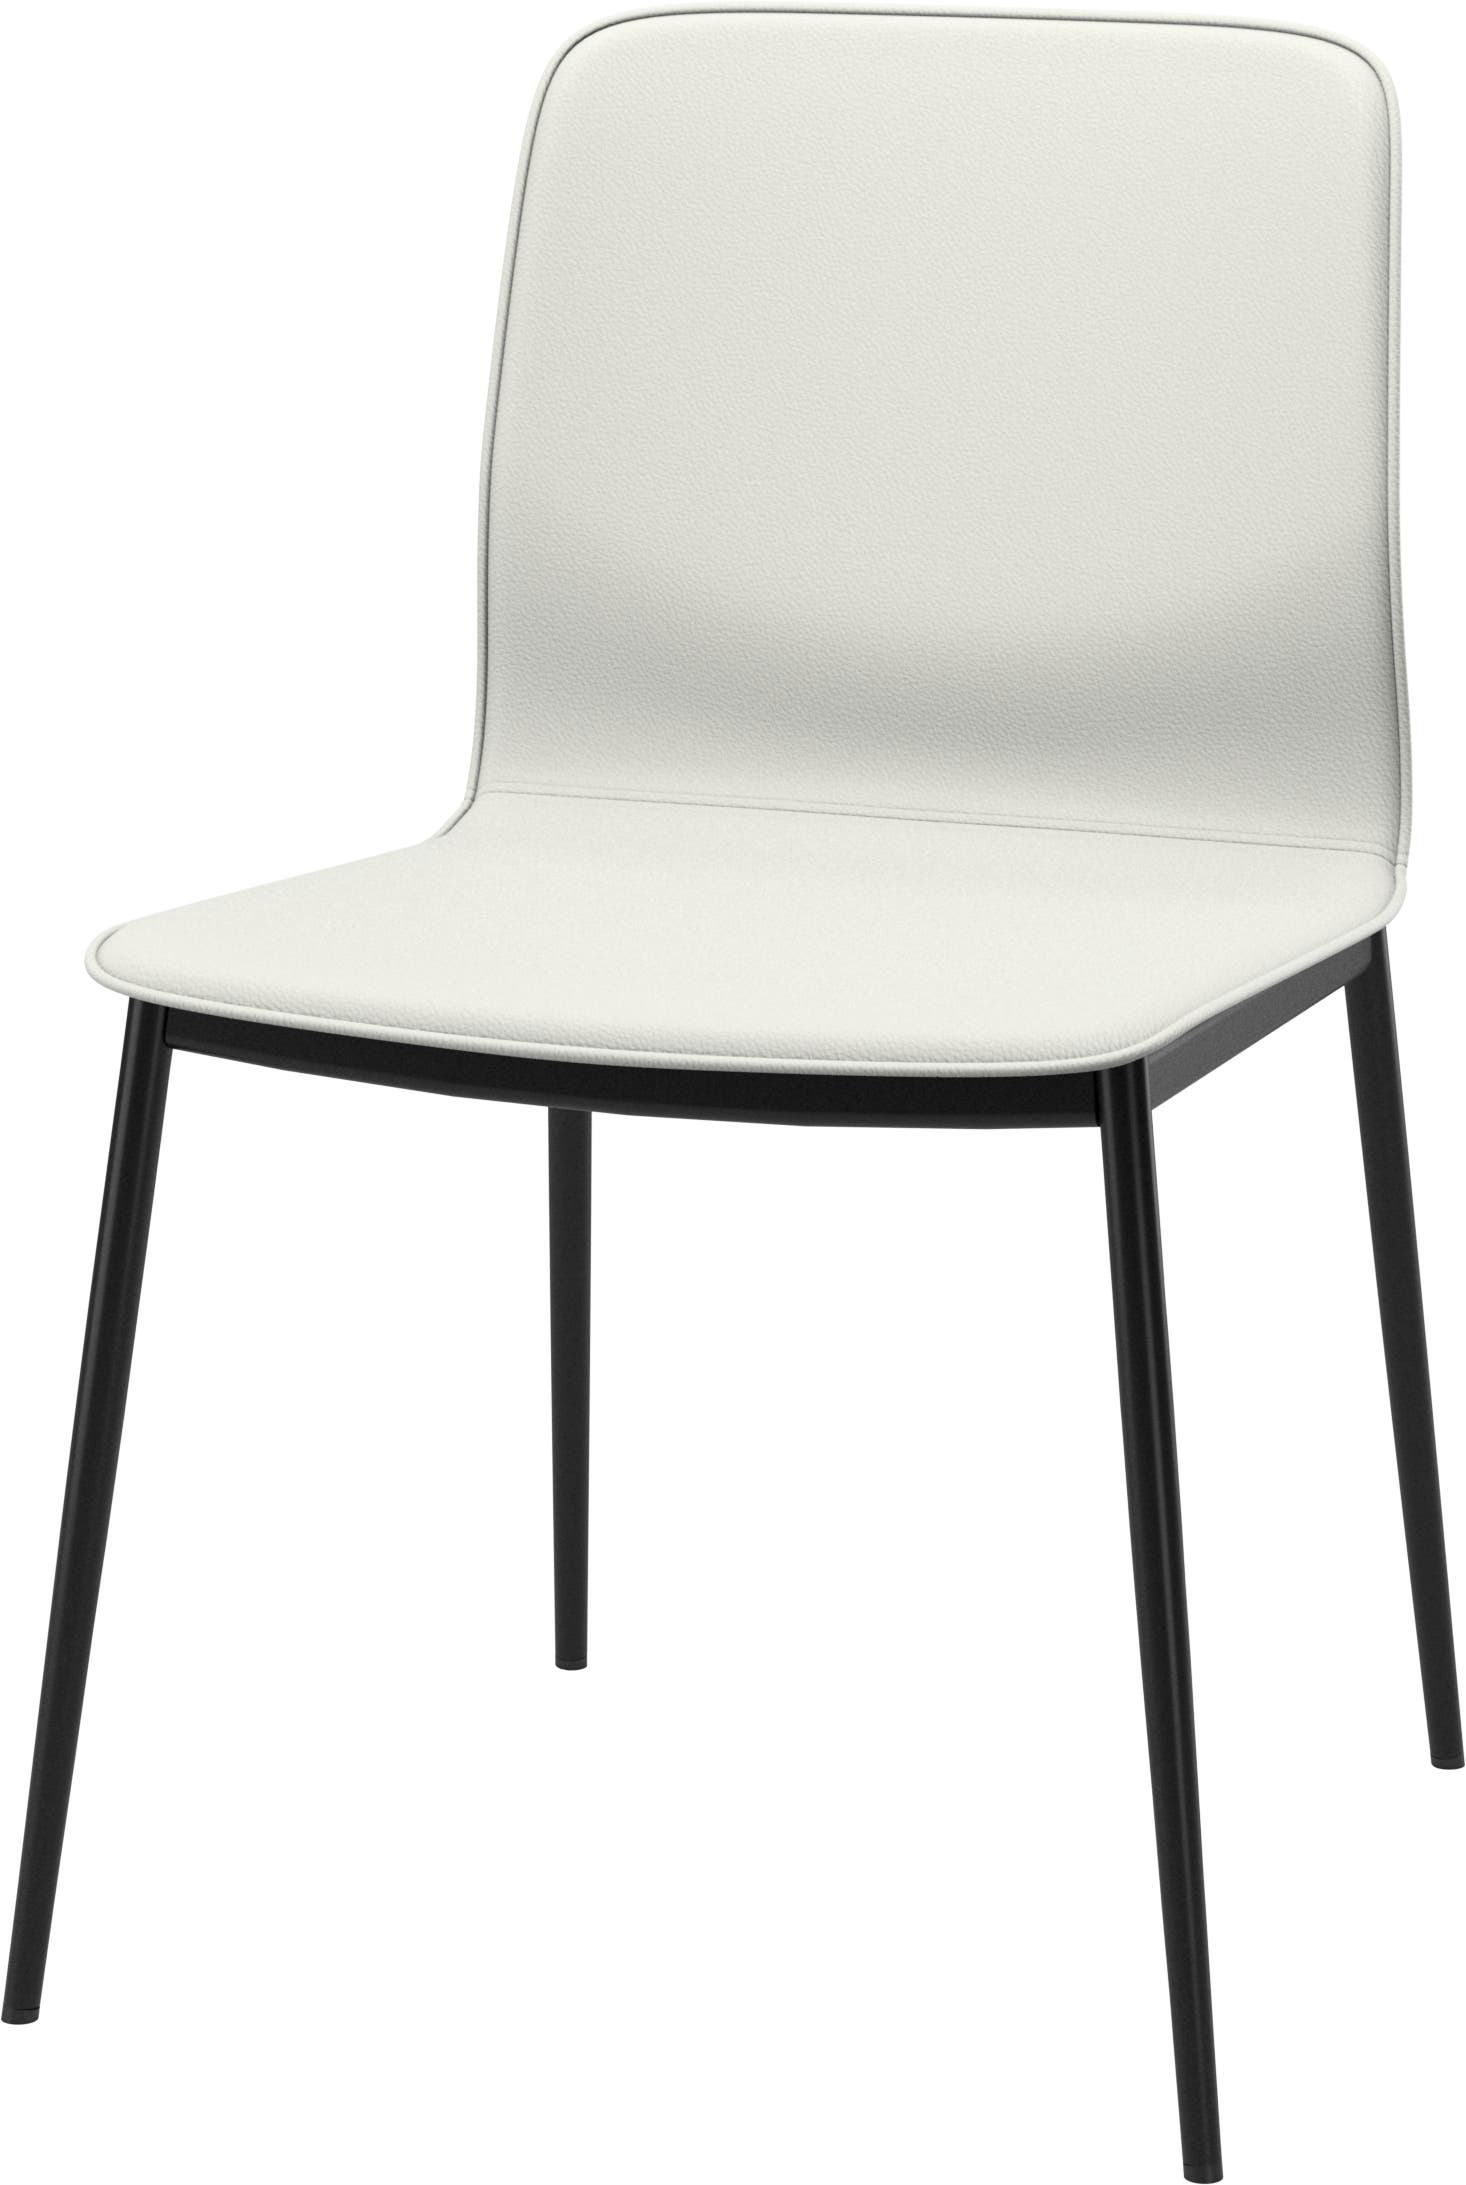 Newport chair